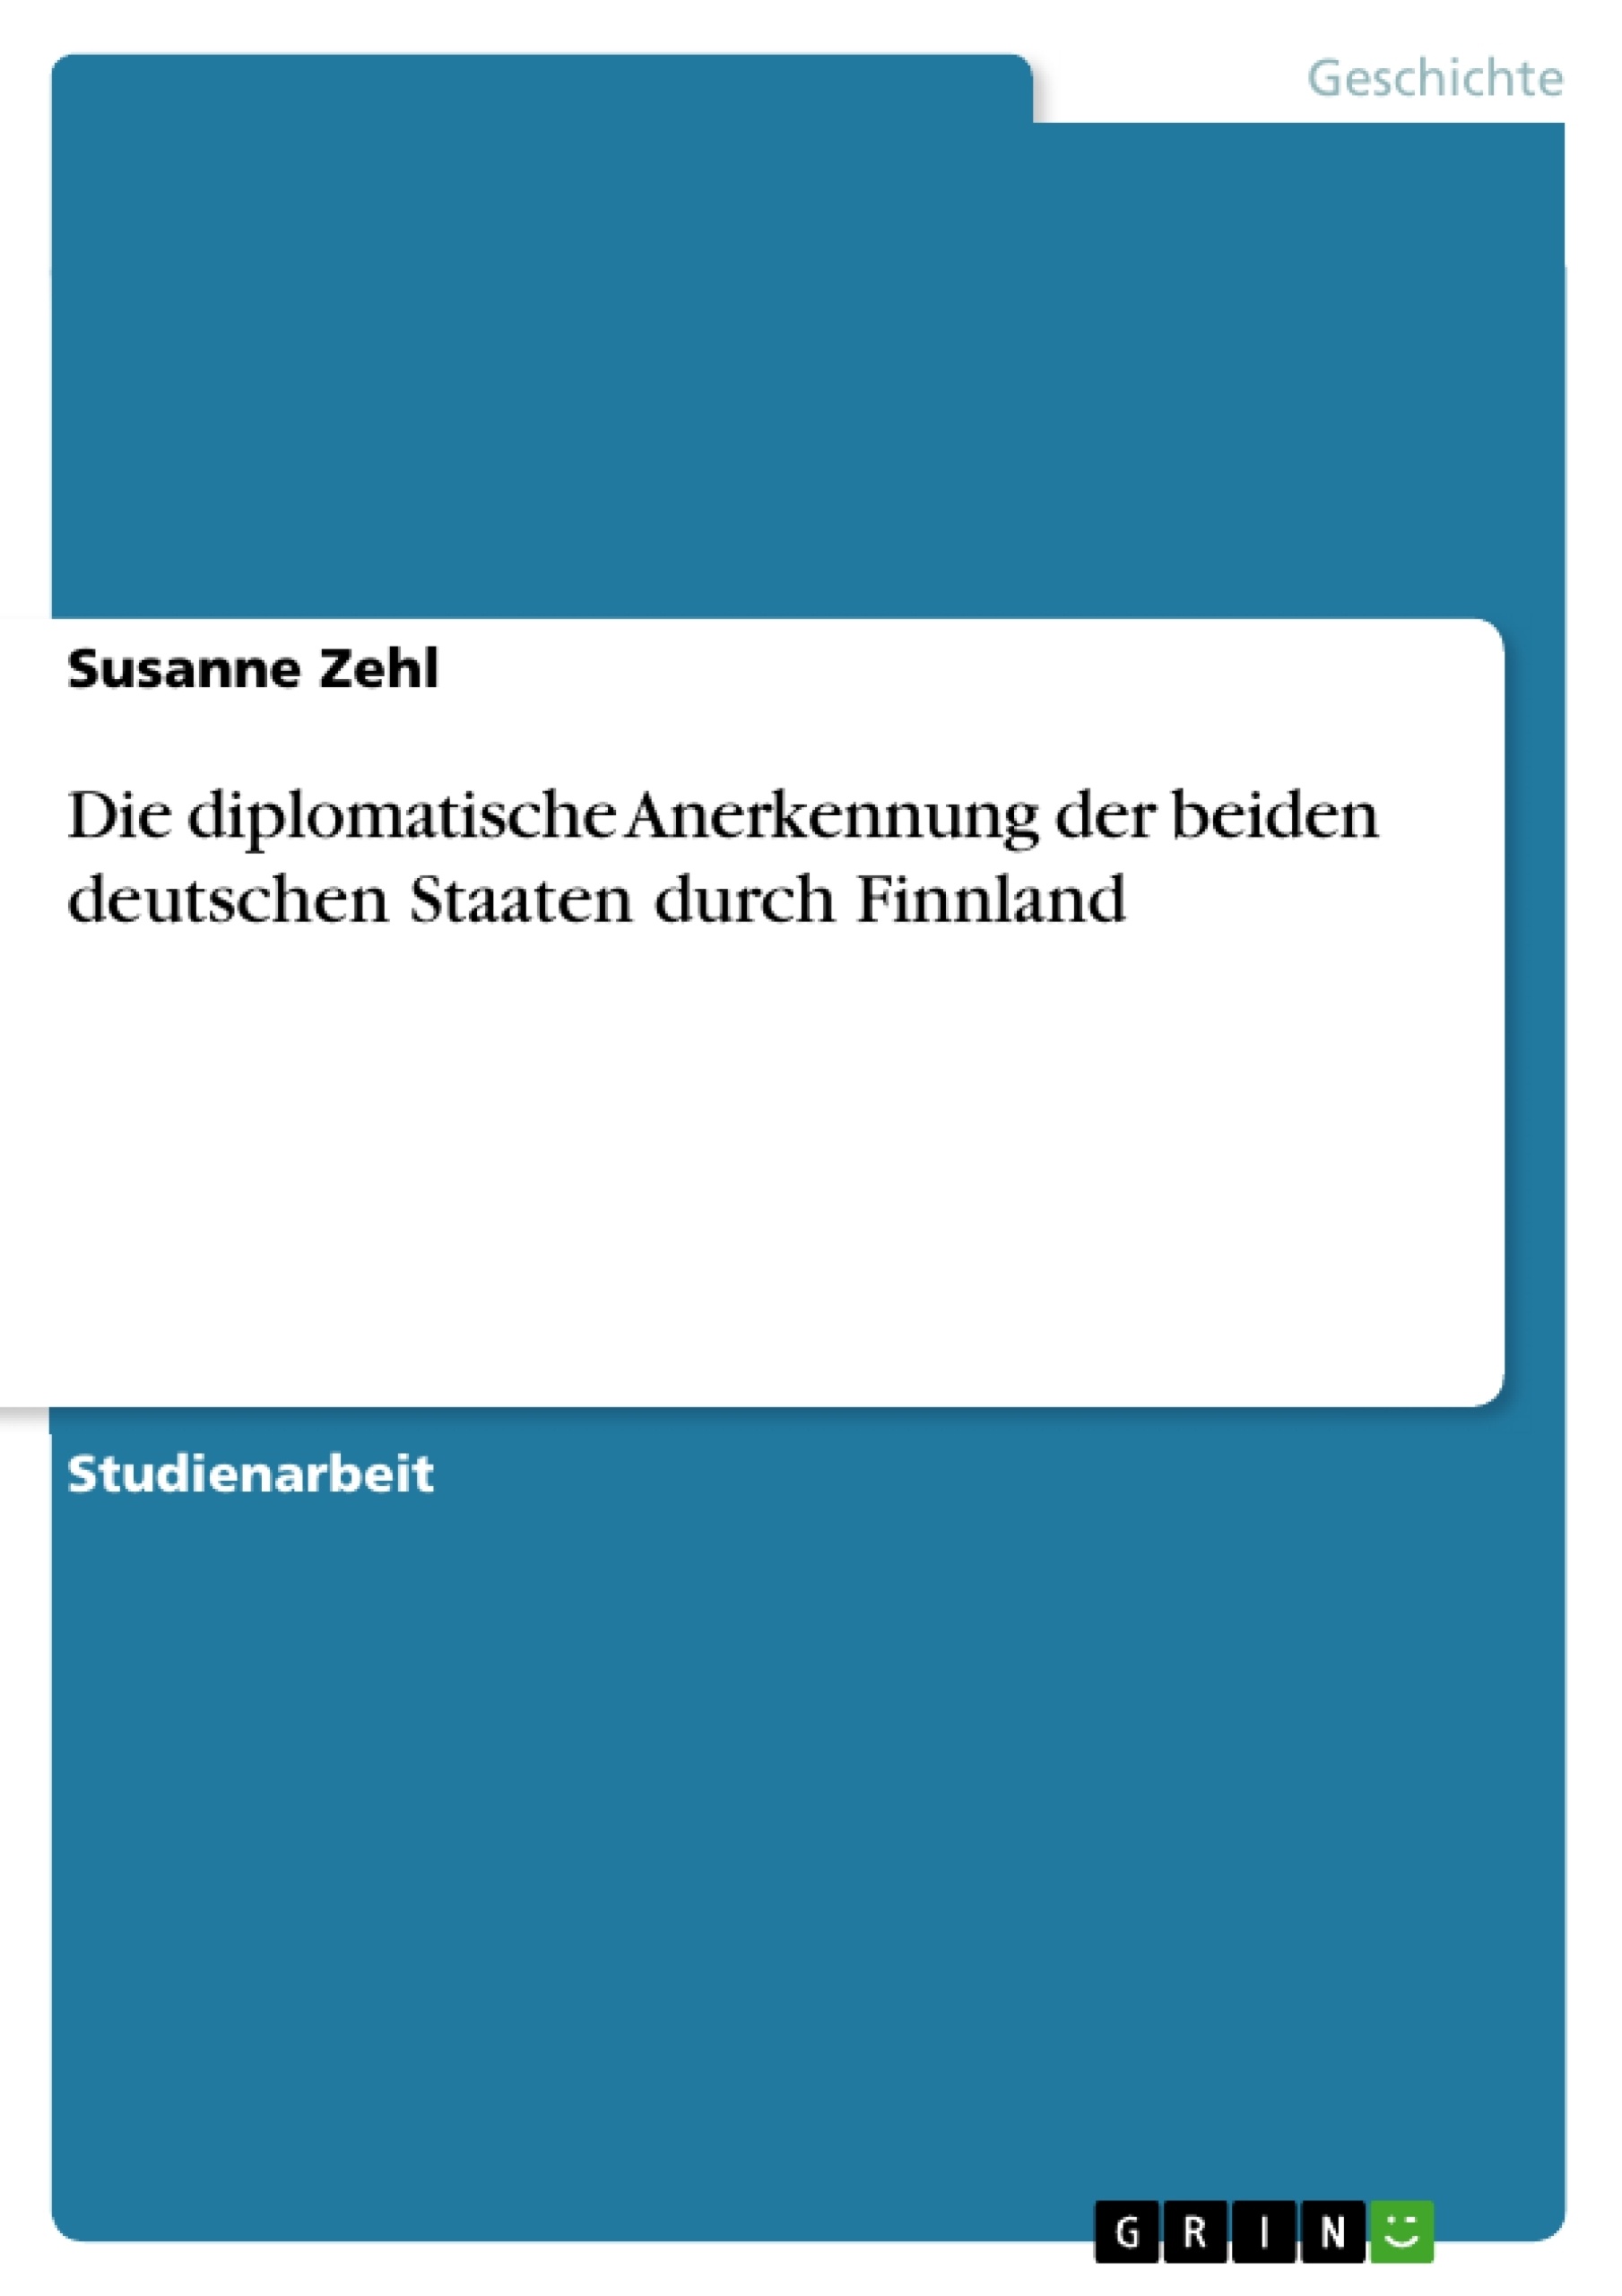 Title: Die diplomatische Anerkennung der beiden deutschen Staaten durch Finnland